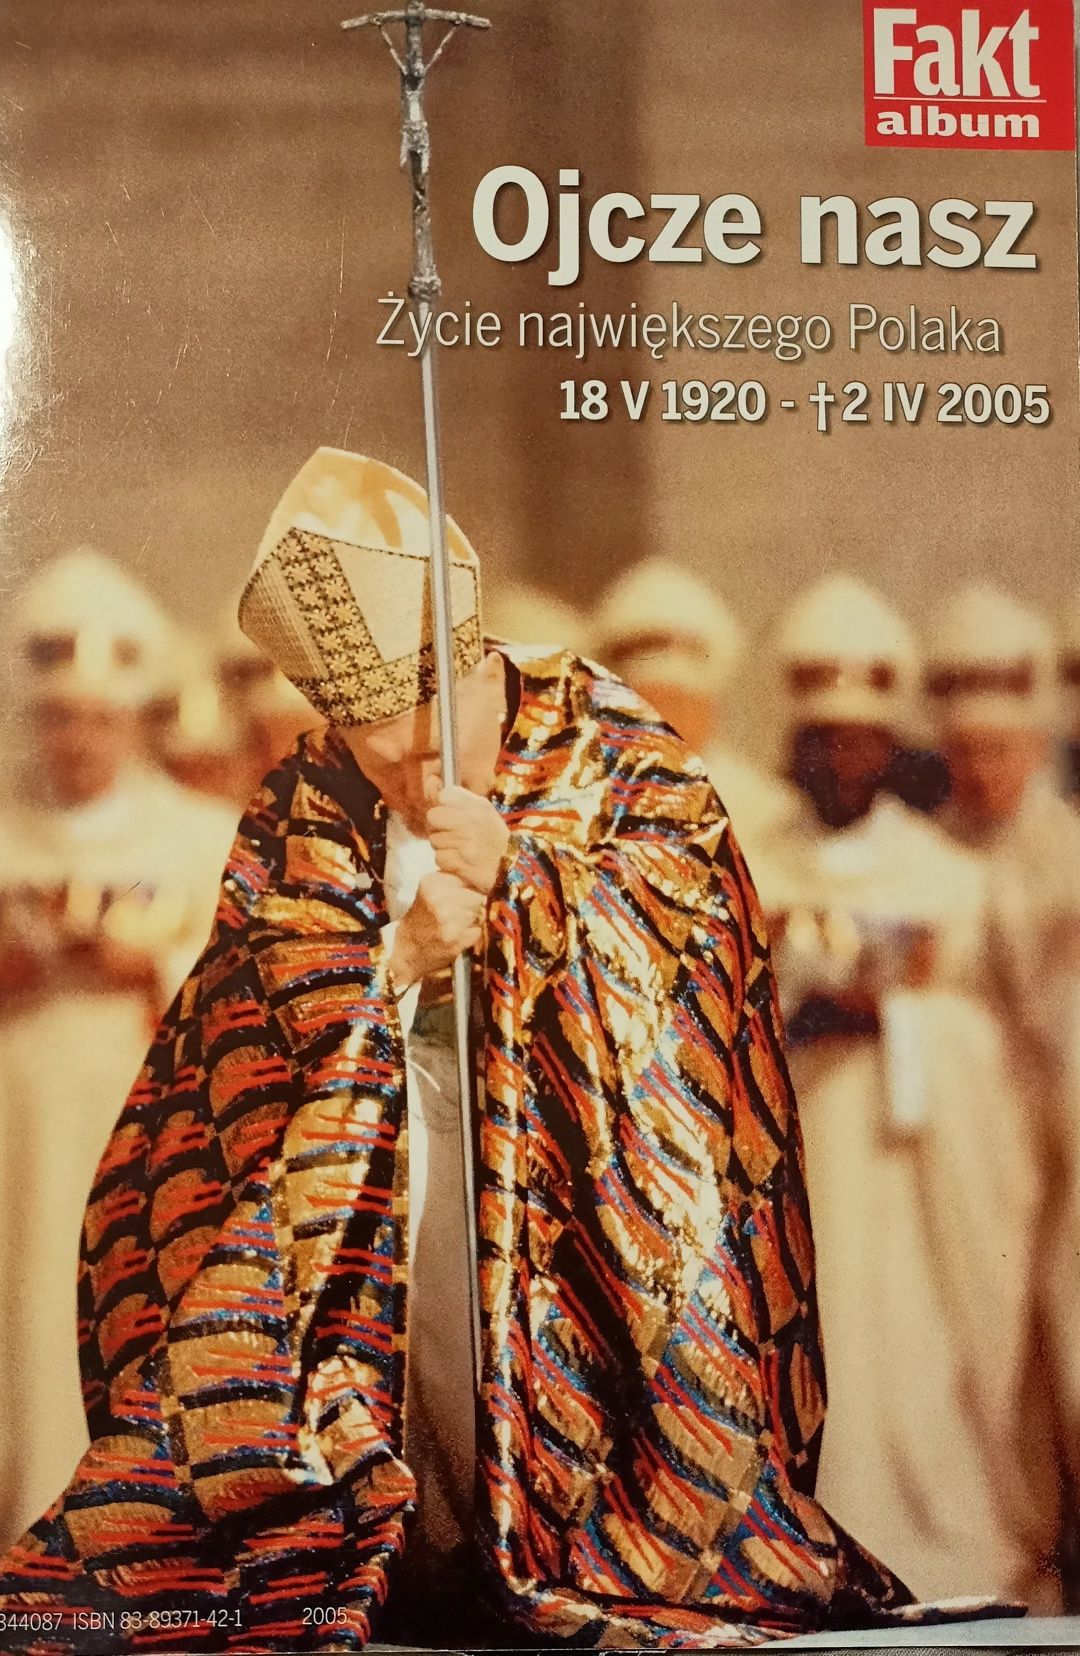 Jan Paweł II album ze zdjęciami opisującymi całe życie Papieża Polaka